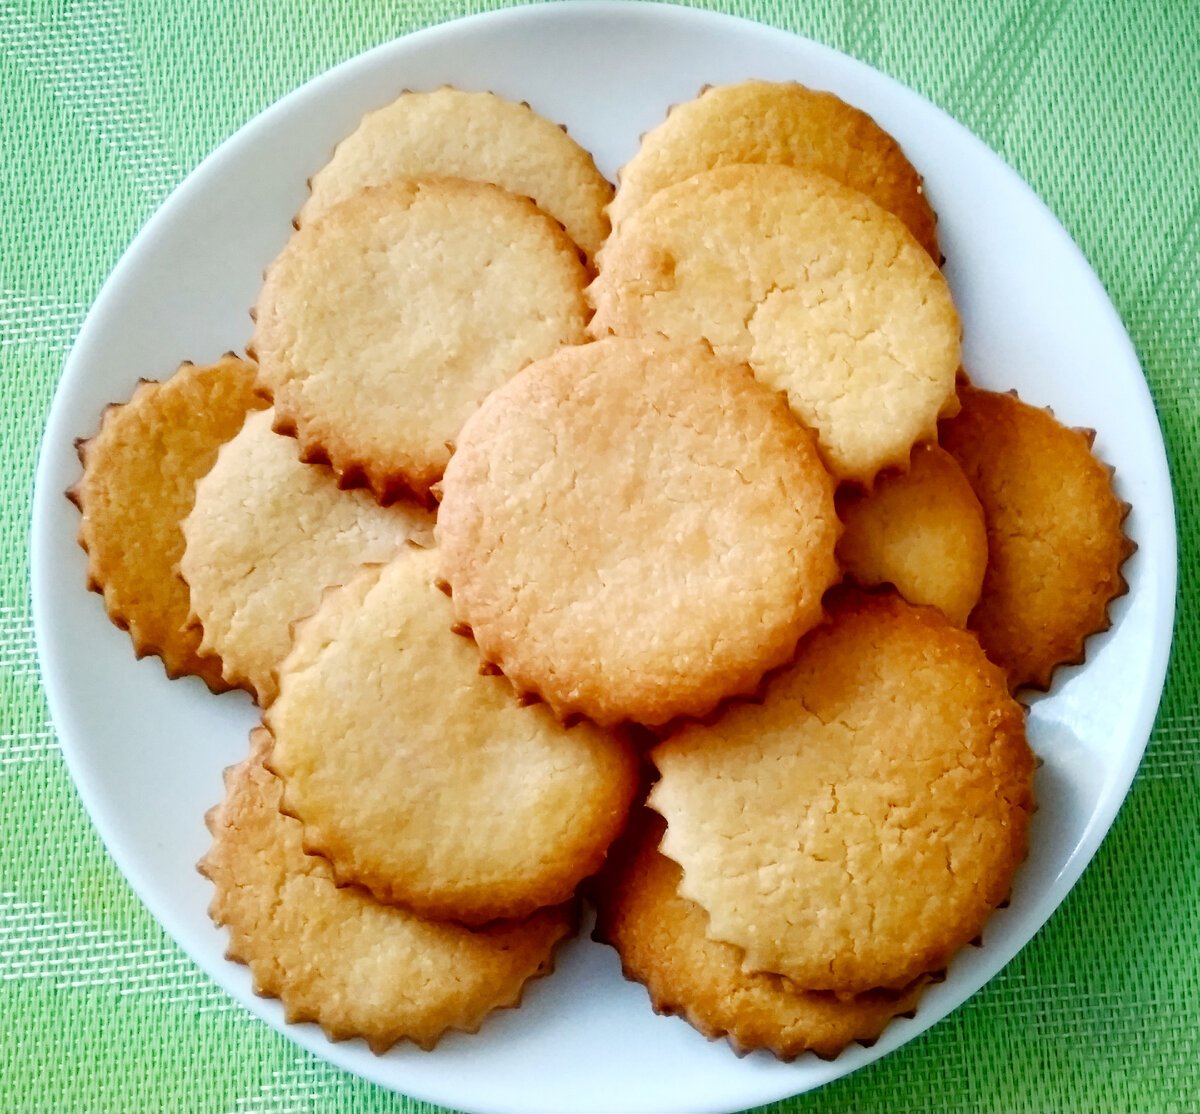 Домашнее печенье со сметаной рецепты